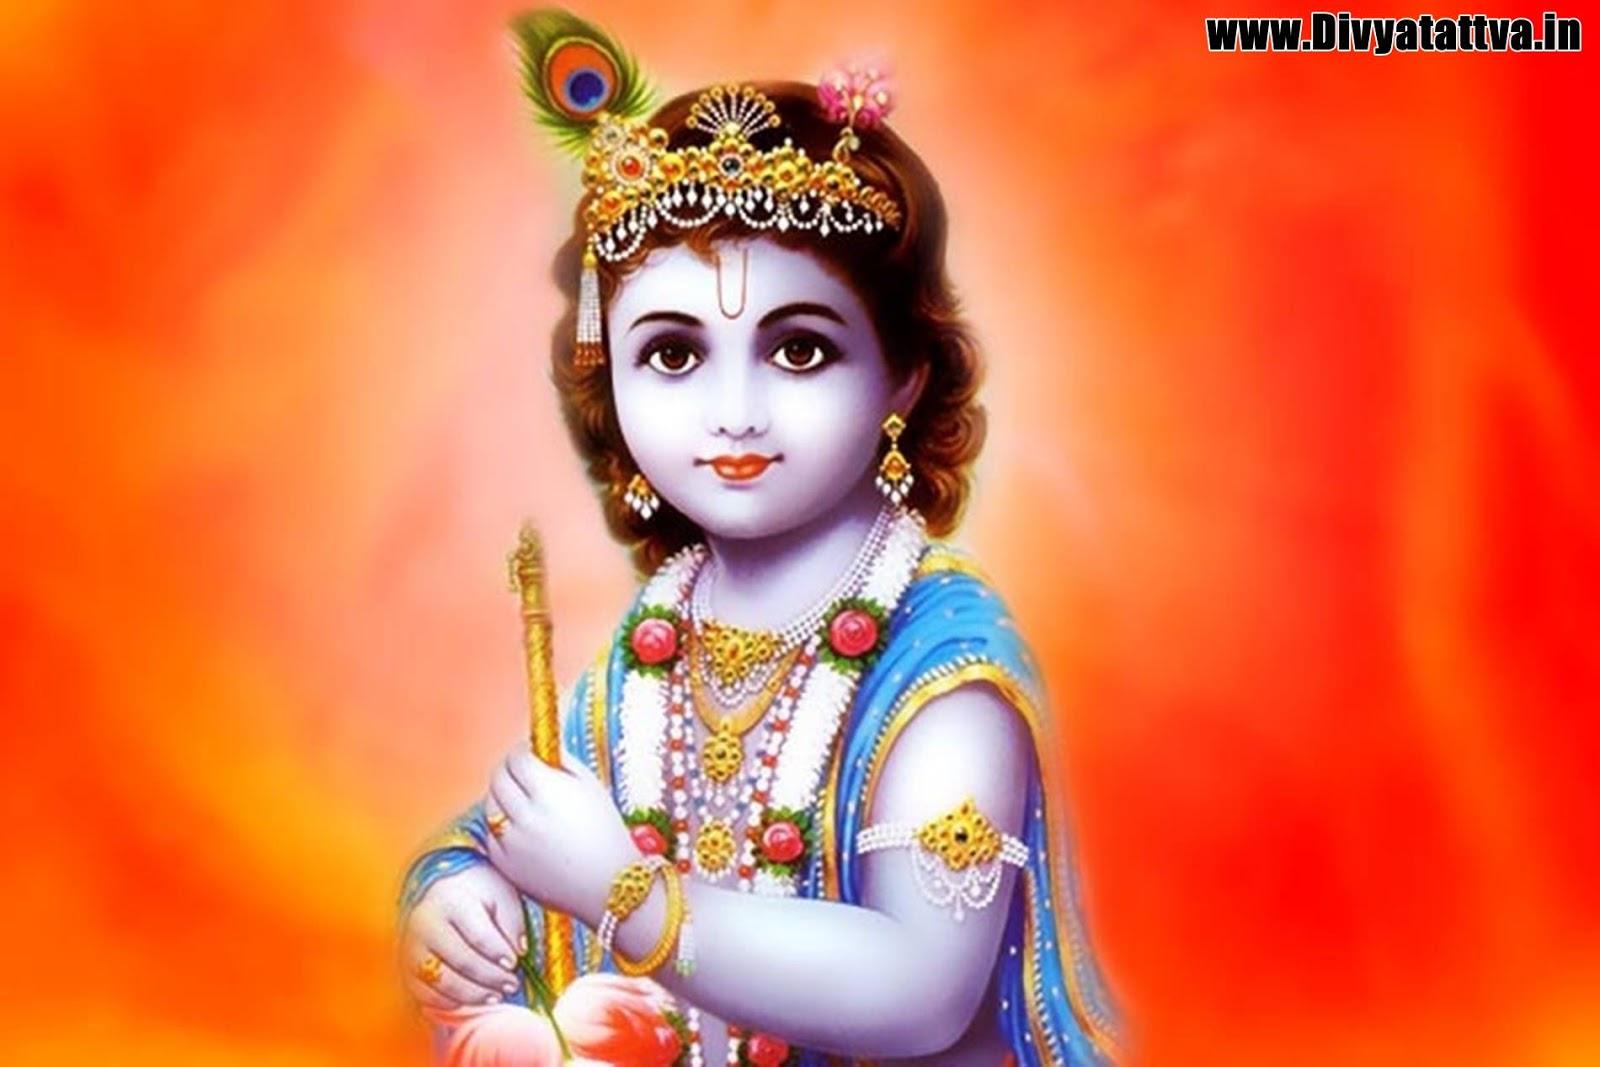 Shri Krishna As Child Krishna Kid, HD Wallpaper